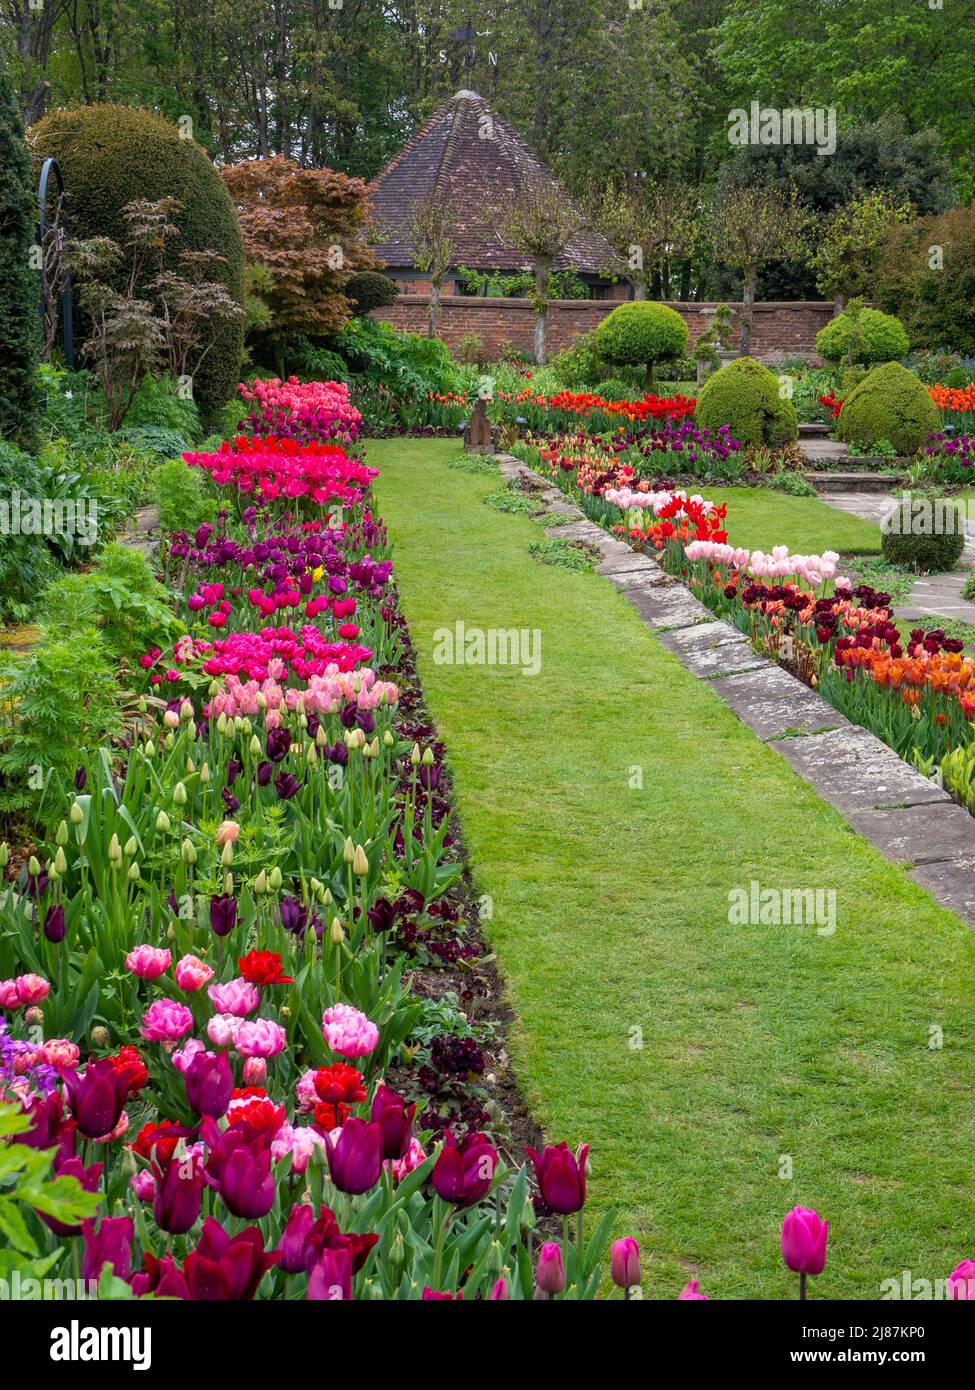 Chenies Manor Garden. Versunkener Garten im Frühling mit vielen Tulpenarten. Mauve, Rosa, Orange, Cerisblüte. Baumbestand und Bäume mit Brunnenhaus und Rasen. Stockfoto